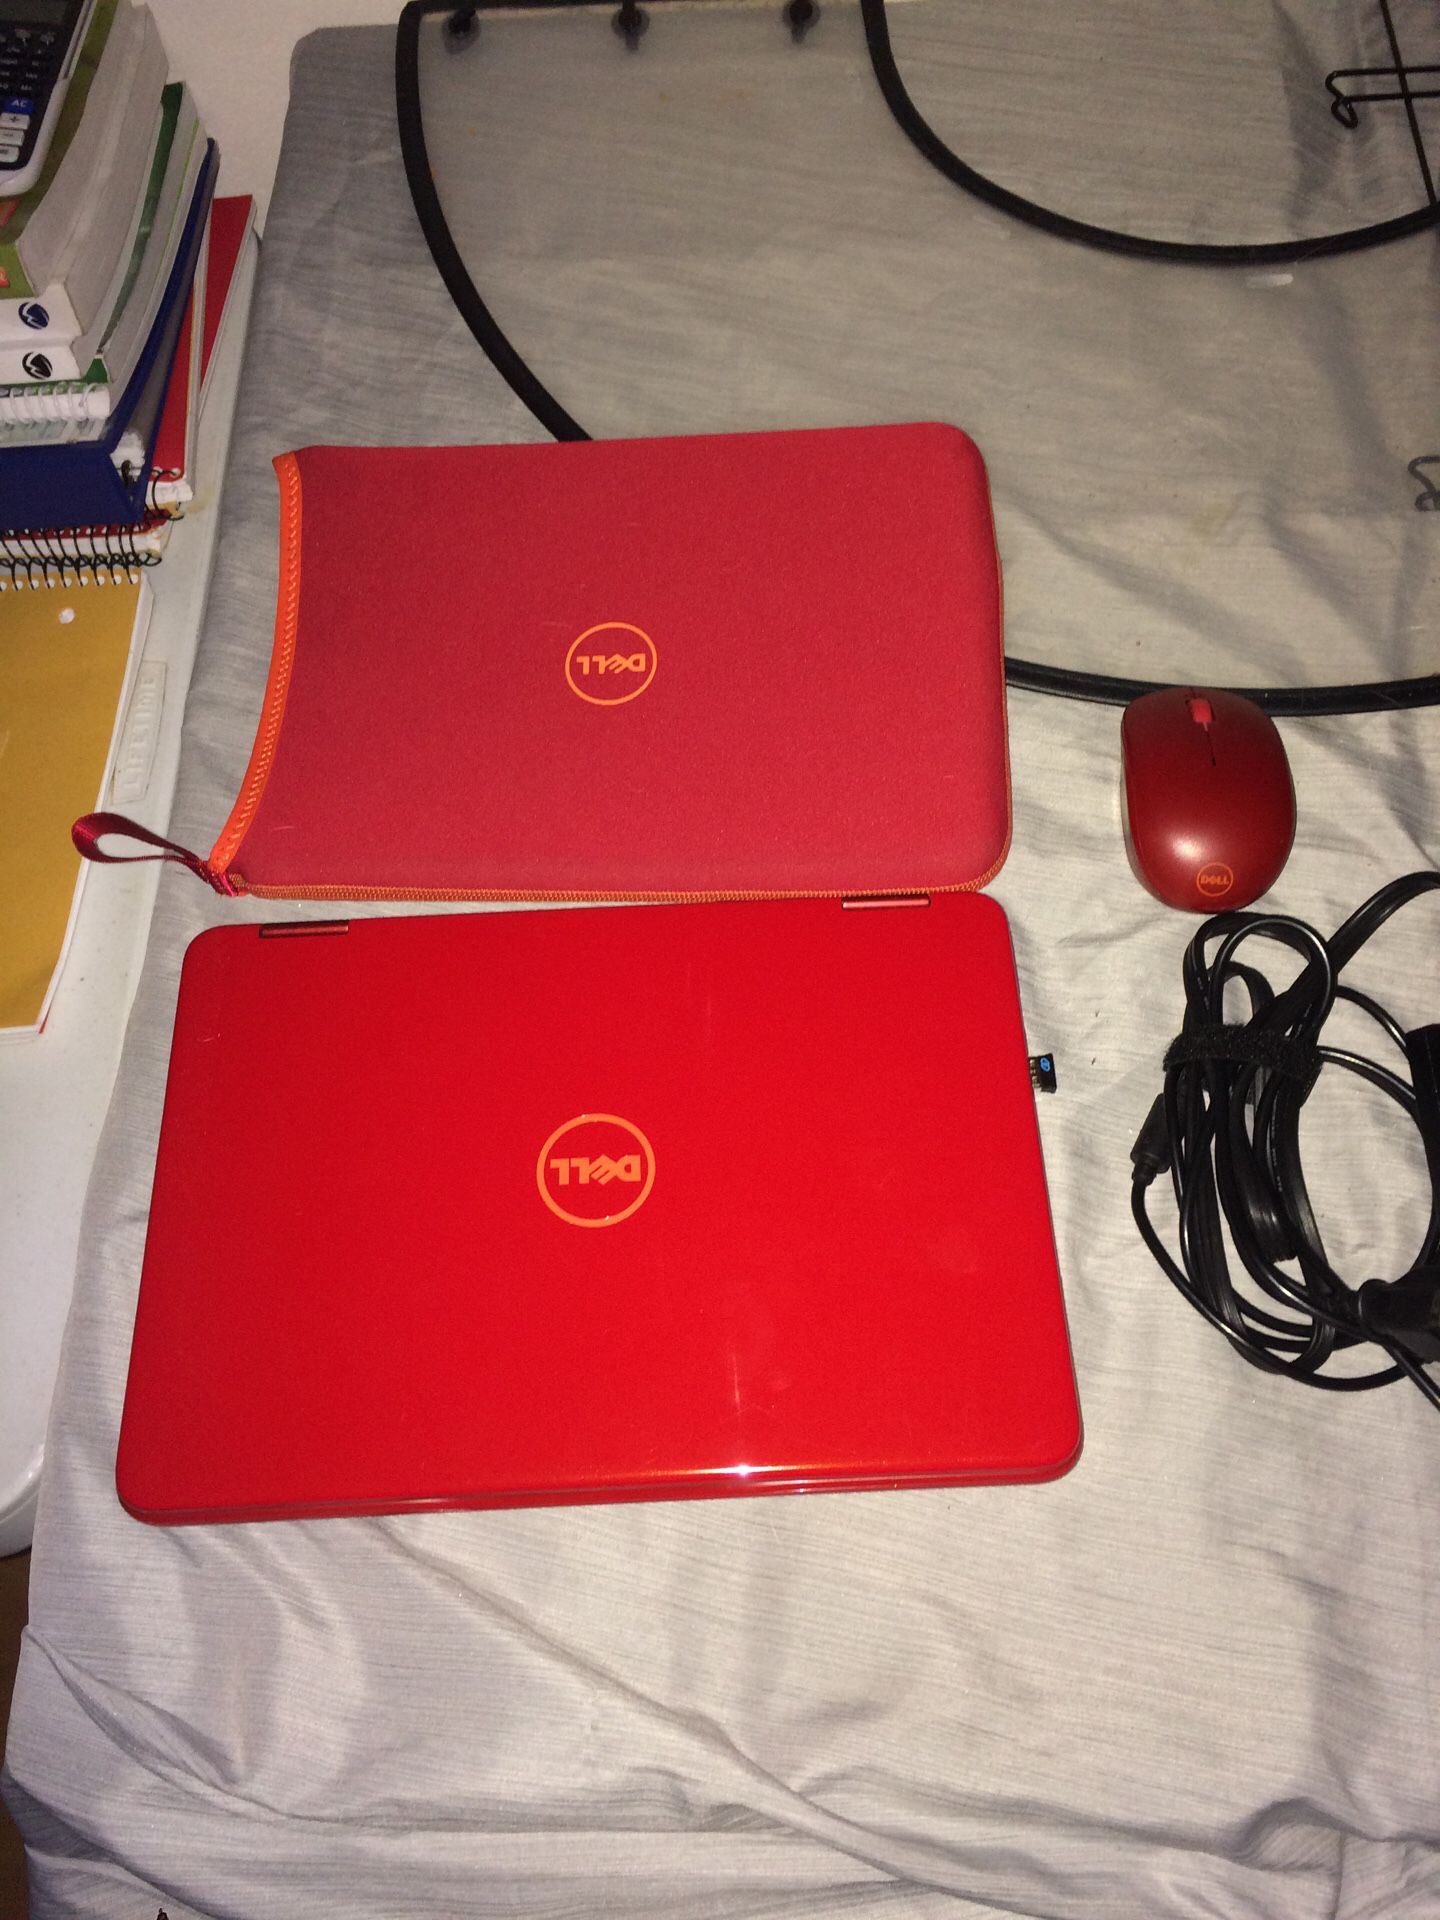 Dell p25t mini laptop